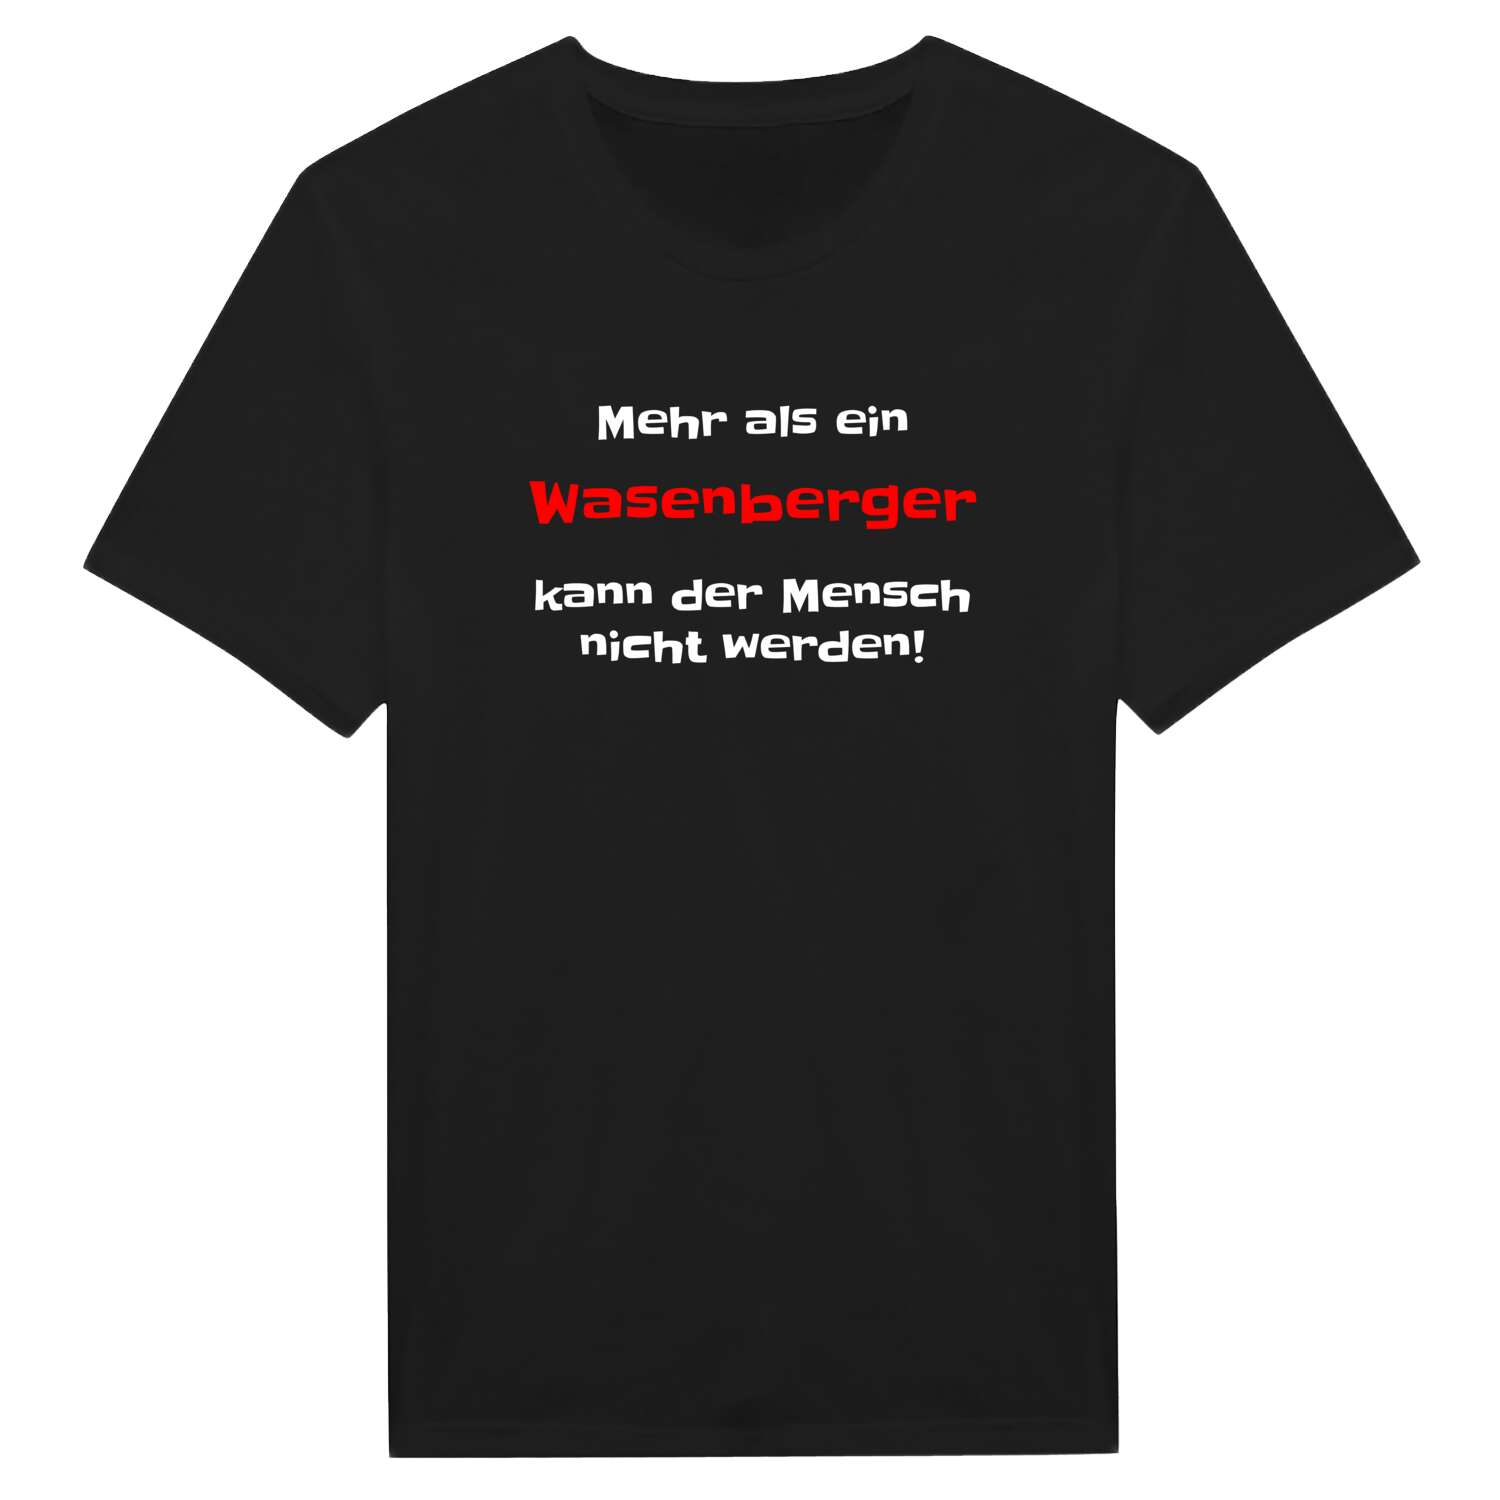 Wasenberg T-Shirt »Mehr als ein«